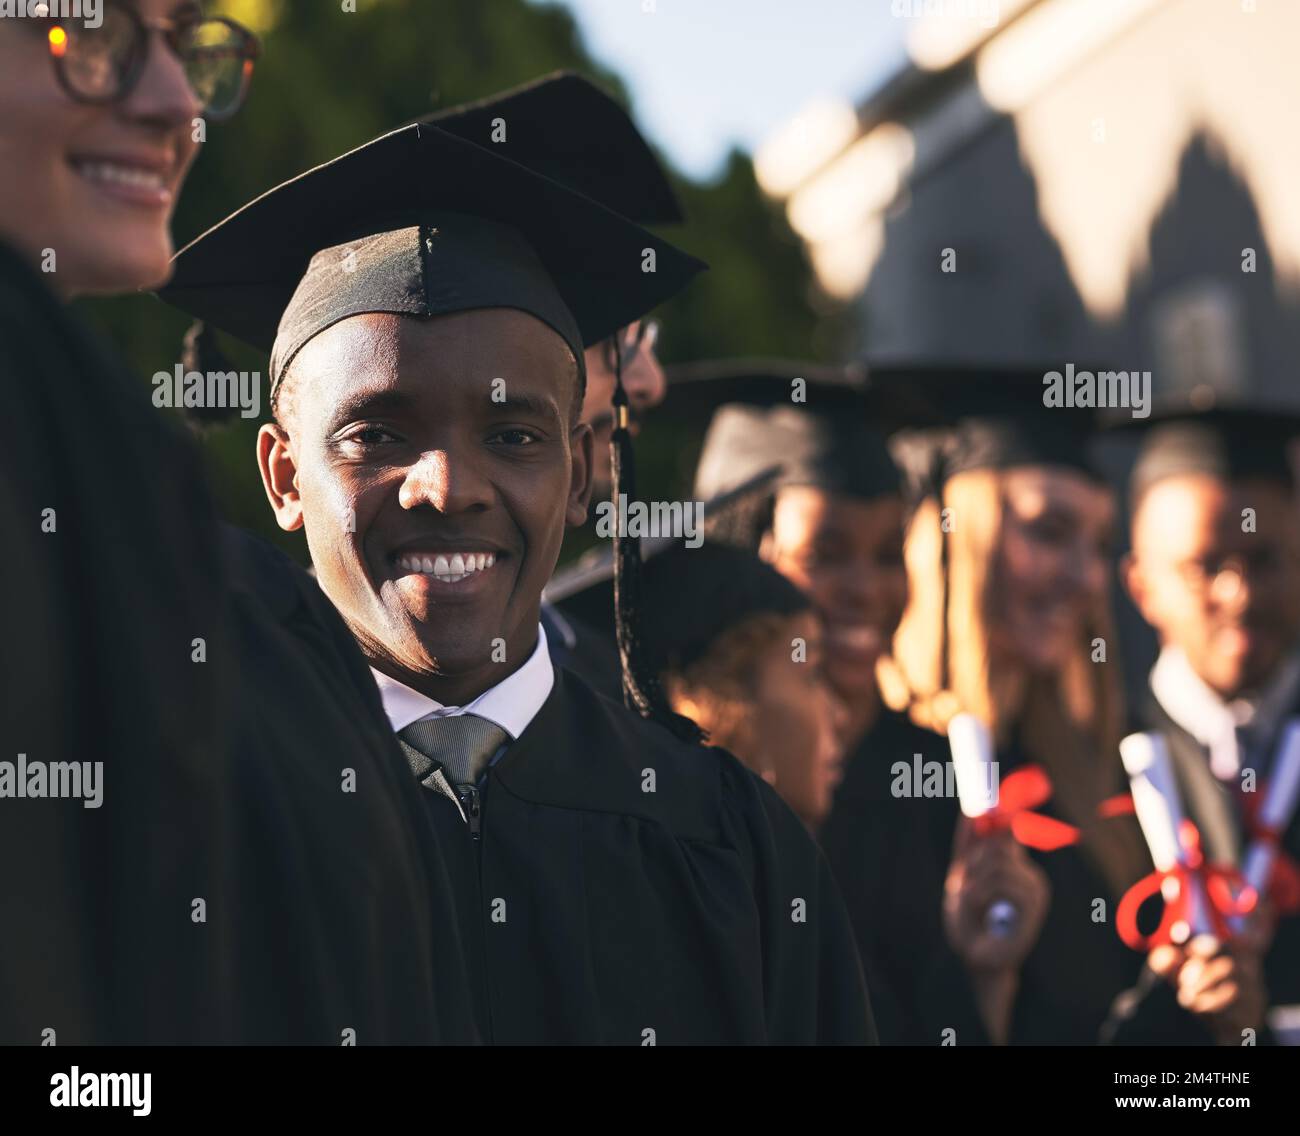 Quegli anni ne sono valsa la pena. Ritratto di uno studente universitario sorridente il giorno della laurea con i compagni di classe sullo sfondo. Foto Stock